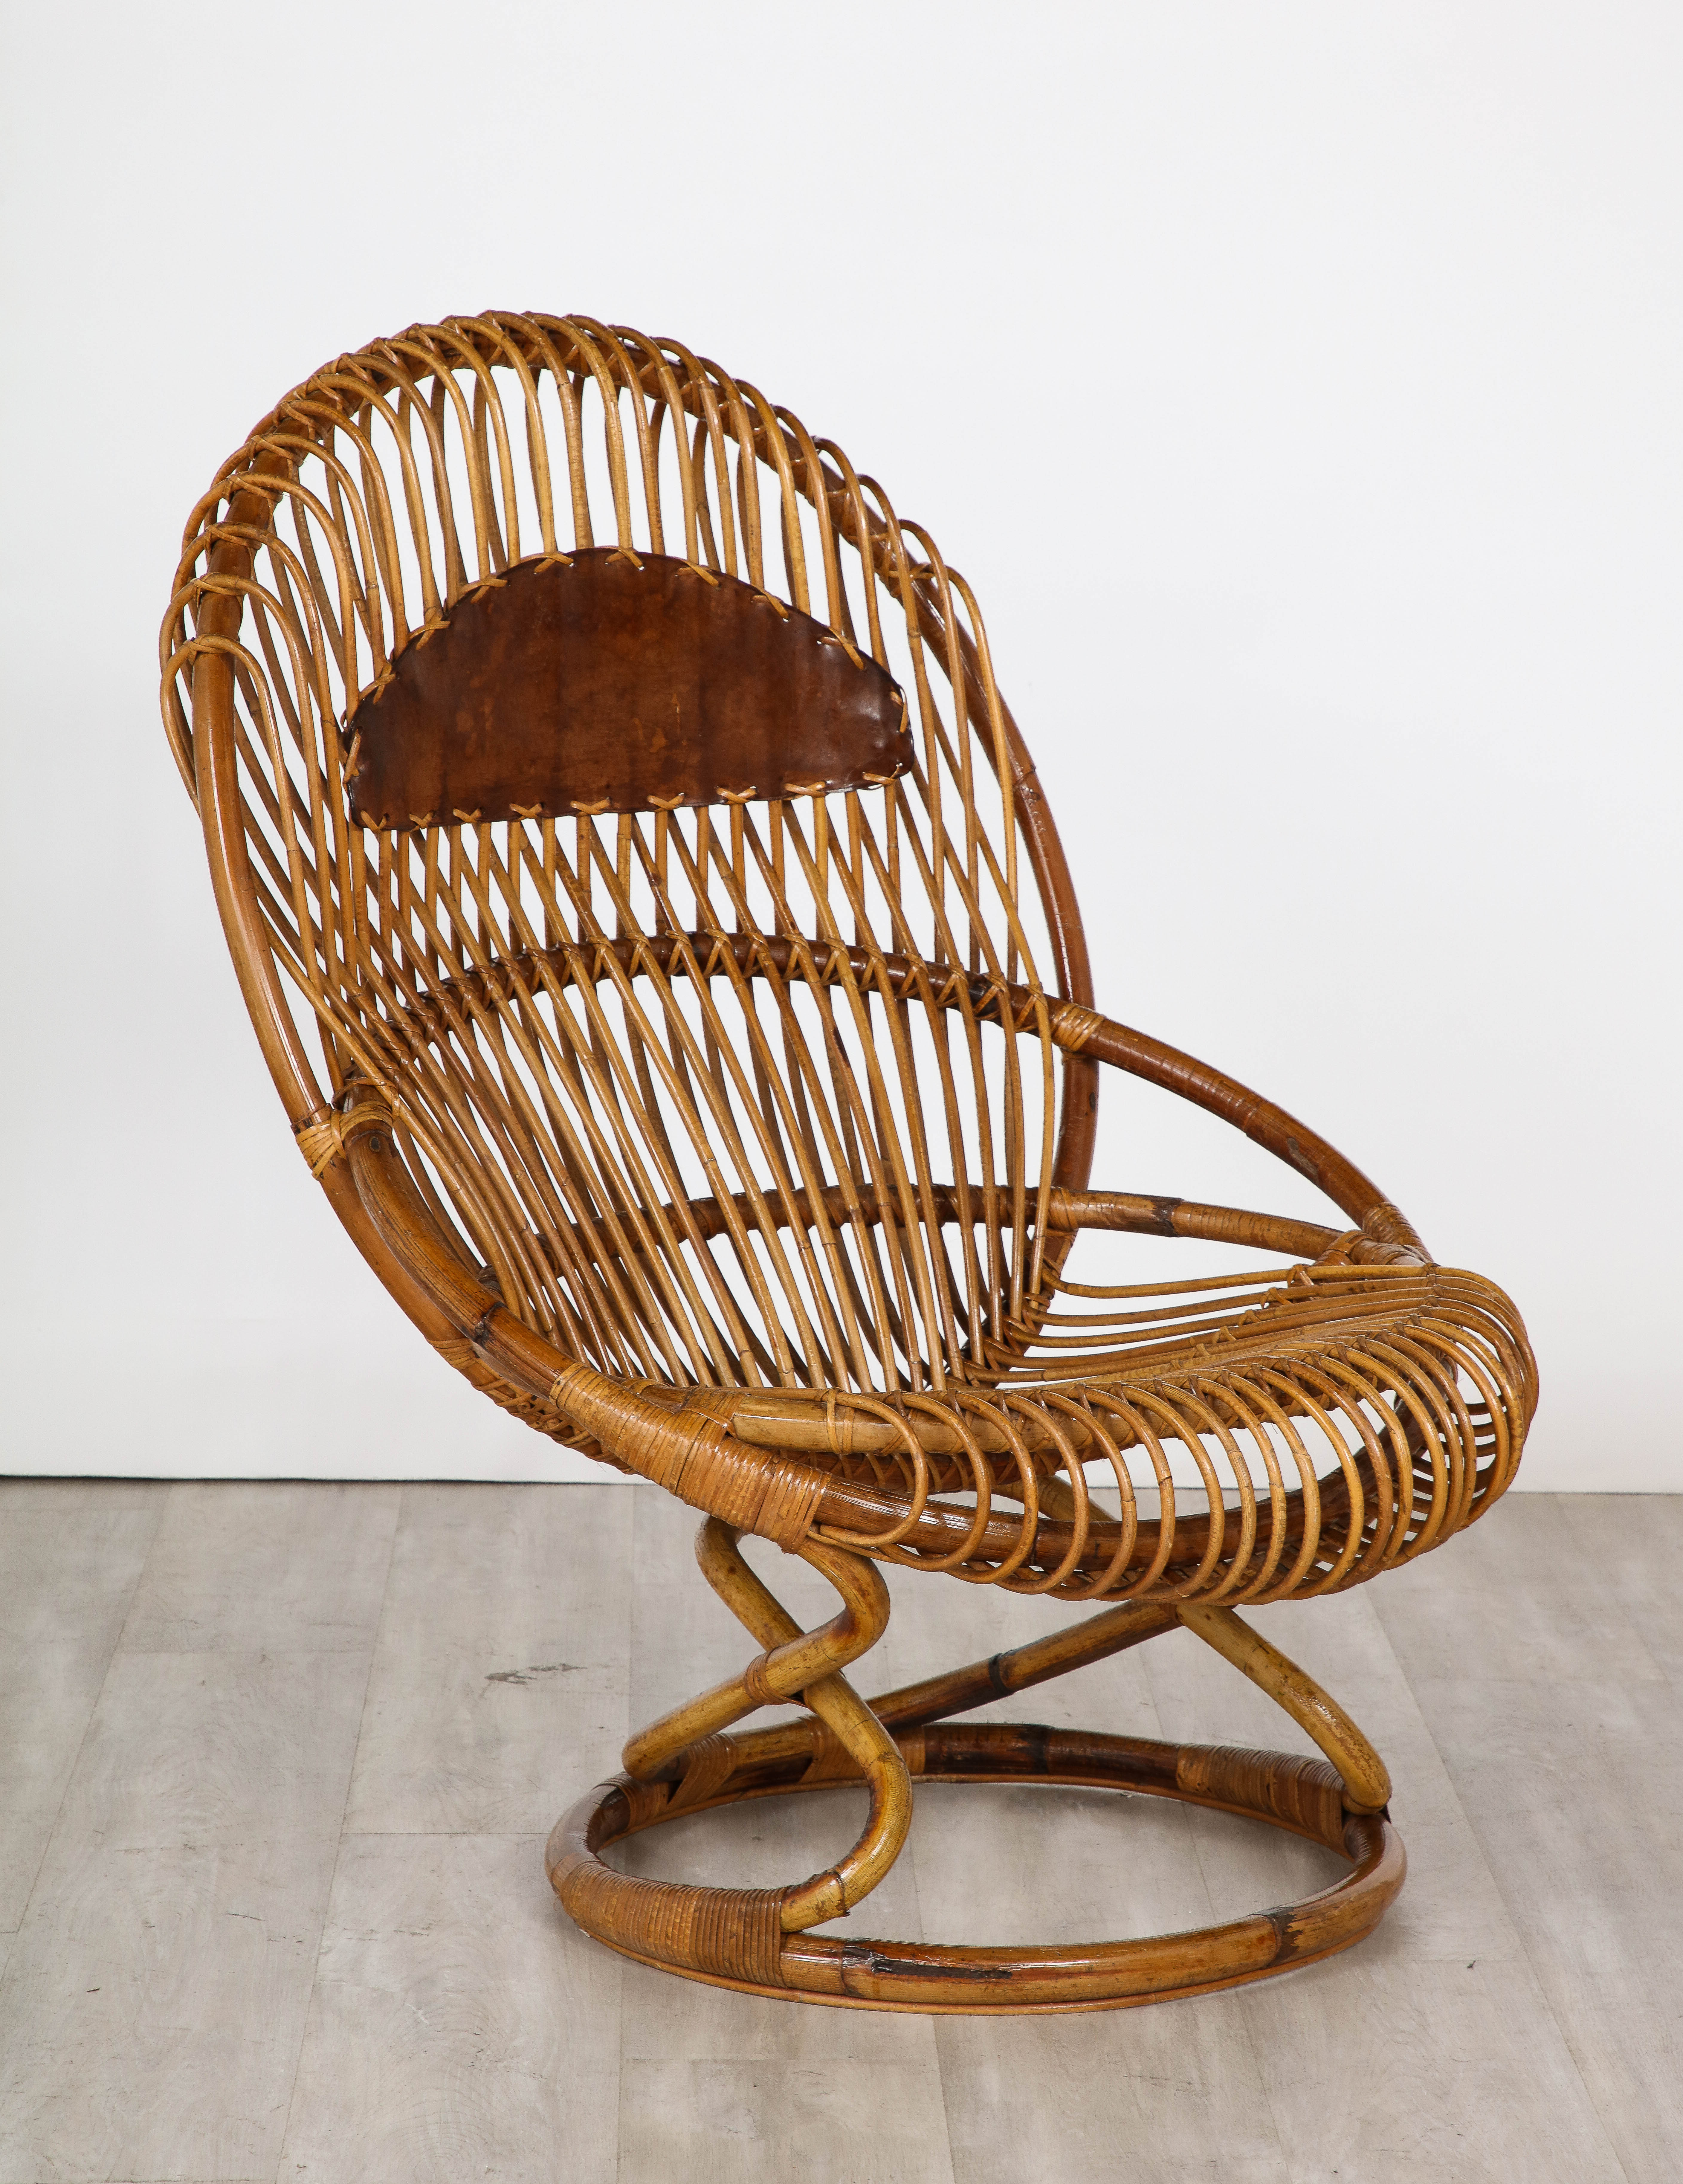 Ein übergroßer Sessel aus Rattan und Leder, entworfen von Tito Agnoli für Bonacina in den 1950er Jahren.  Ein sehr skulpturales Design, das die Schönheit des natürlichen Holzes hervorhebt. Die Farbe ist warm und schön, das karamellbraune Leder an